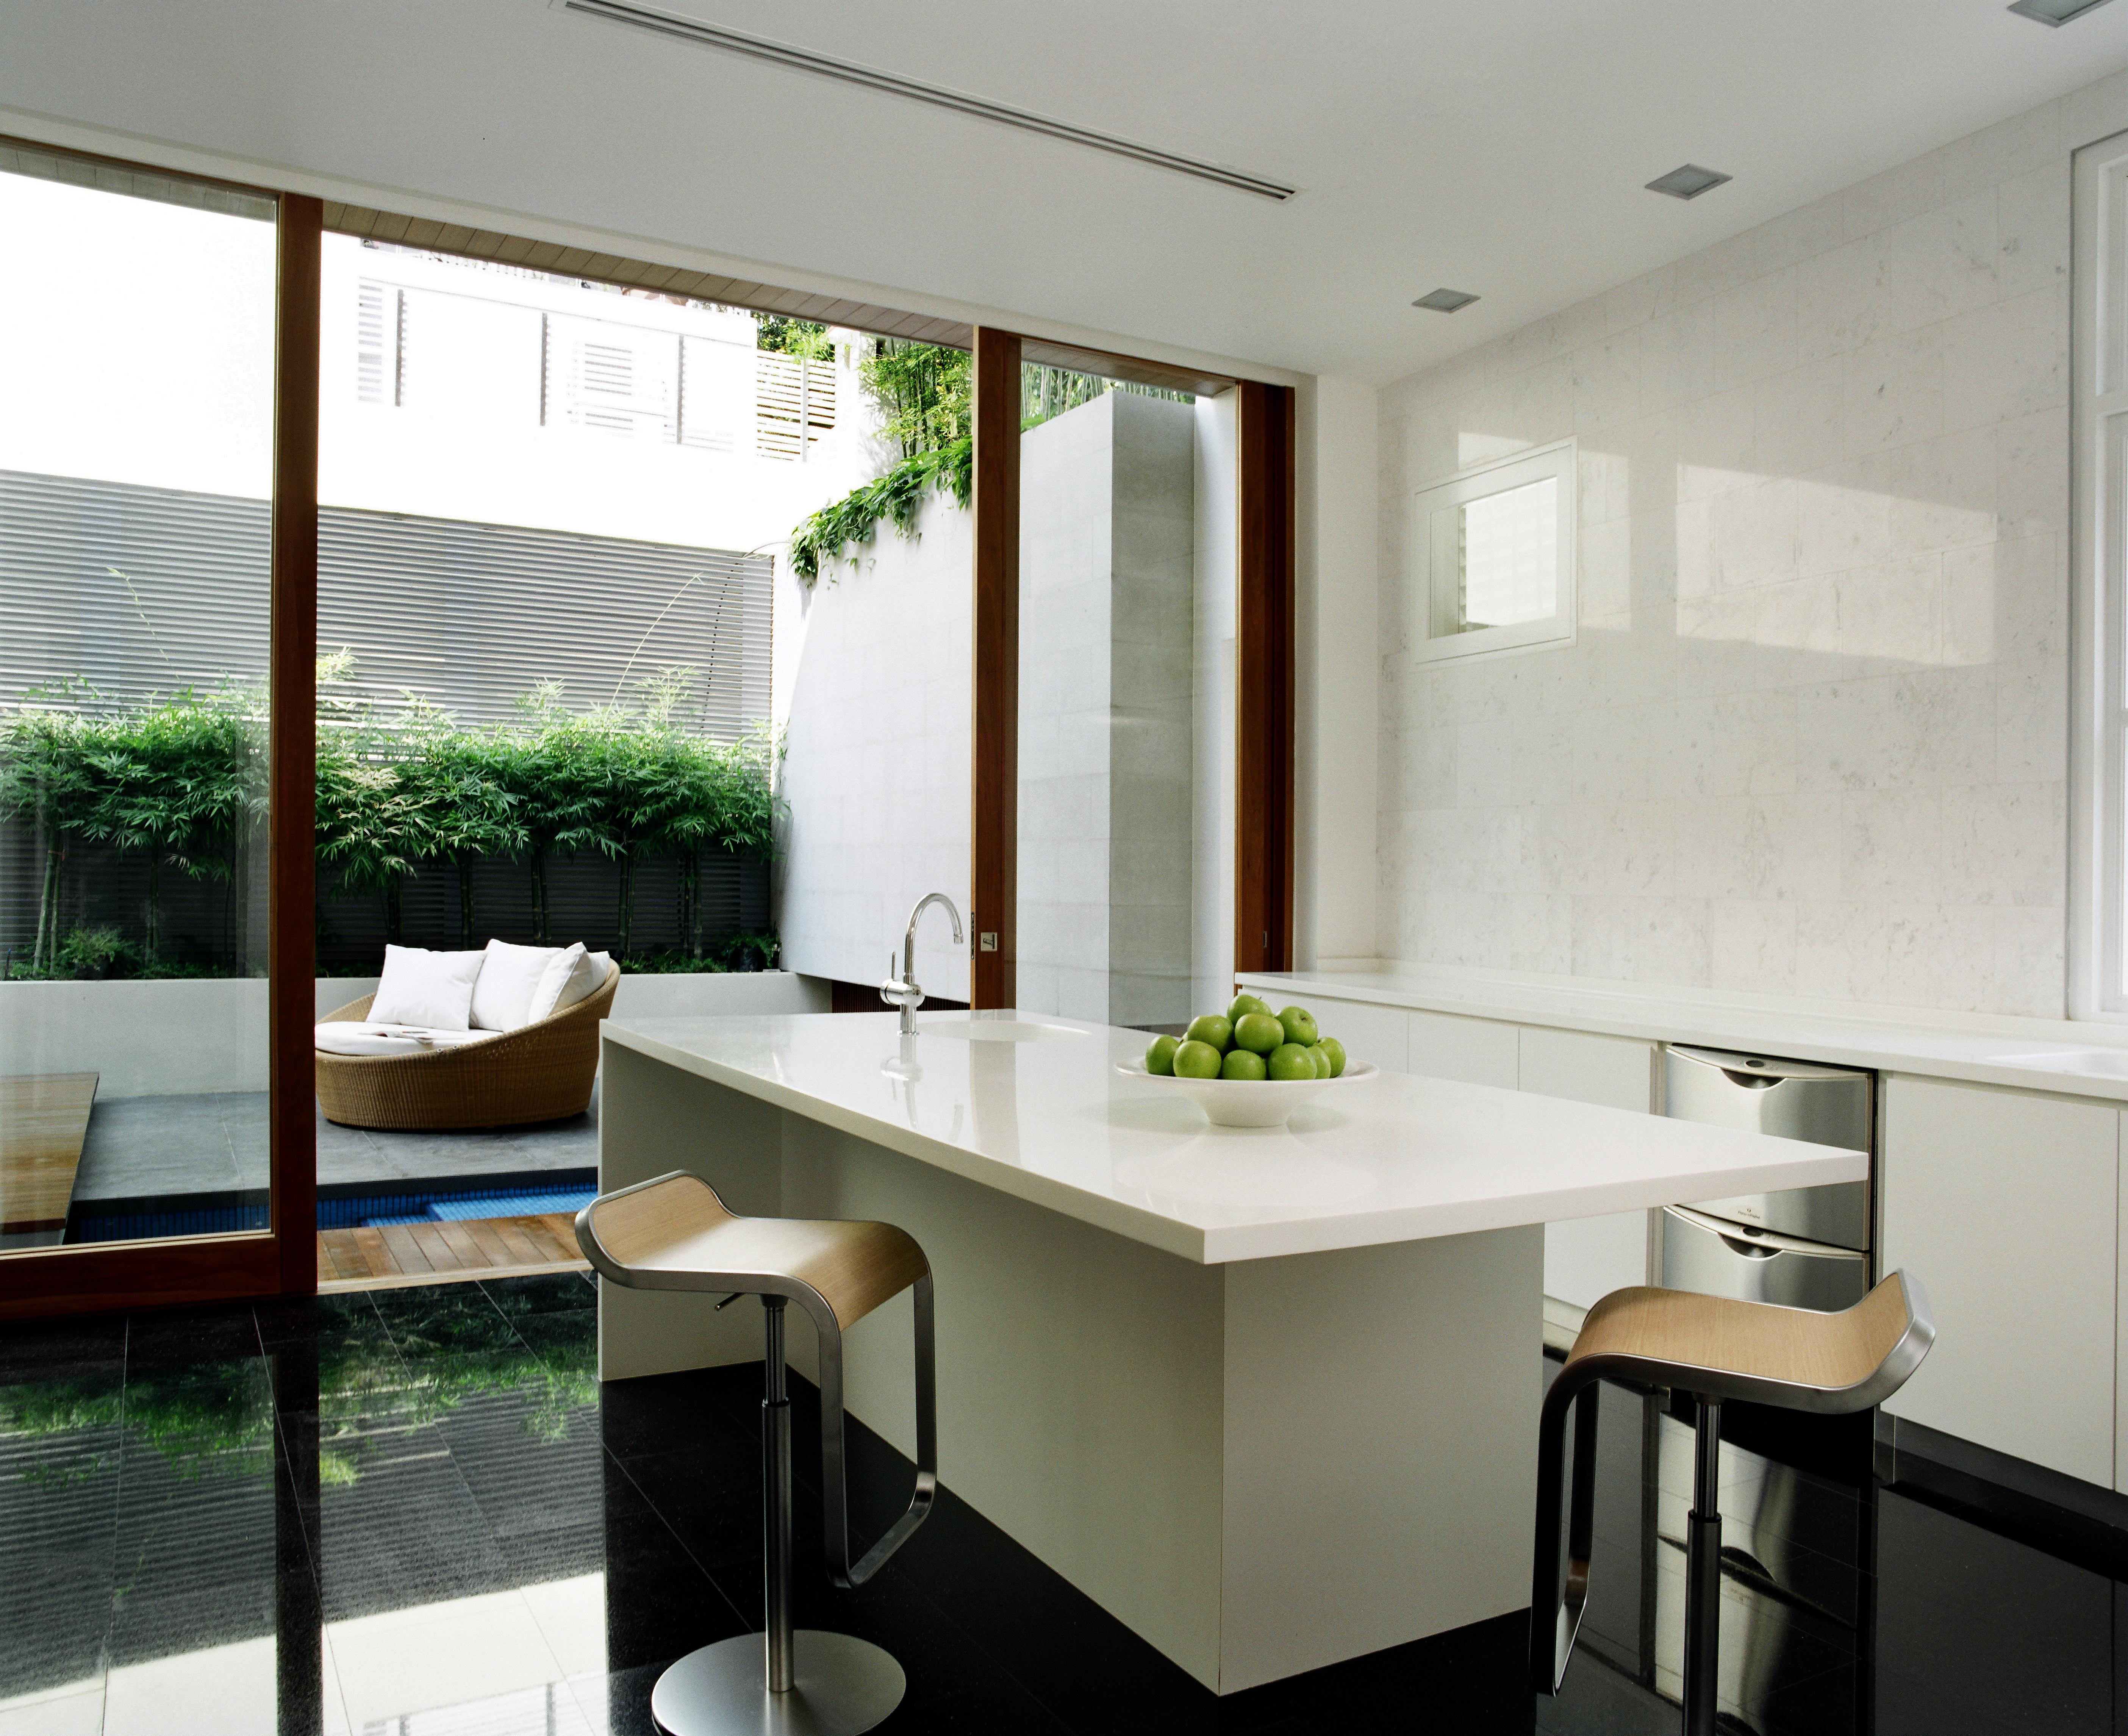 黑色瓷砖地板和白色台面的对比定义了舒适、简约的厨房空间。岛上的特色用餐空间在一对金属和良好的凳子上，而露台上的圆形柳条座椅可以通过滑动玻璃板看到。